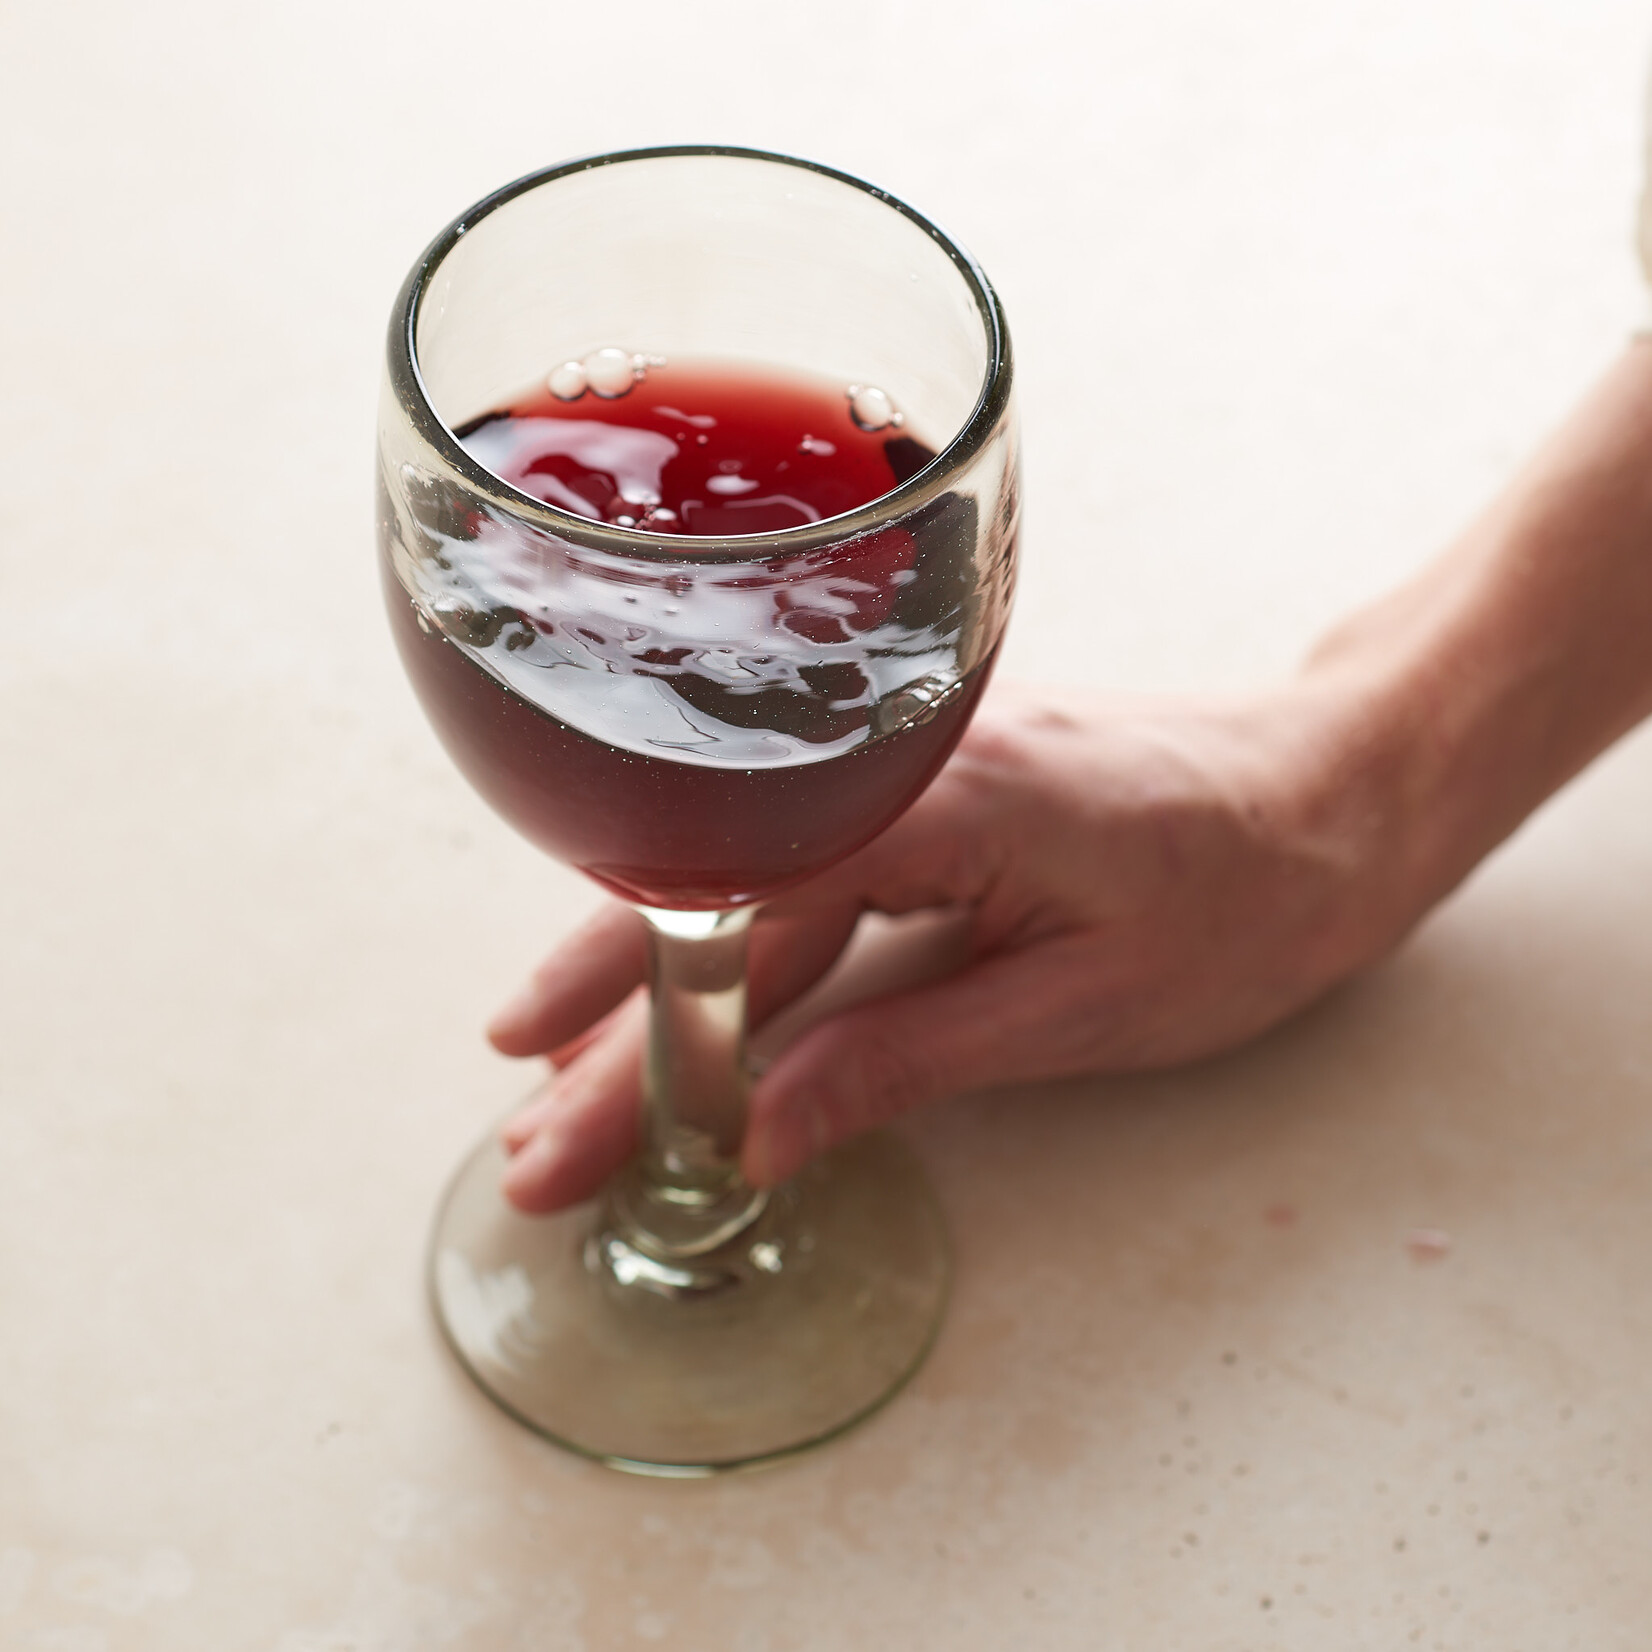 Handblown Stemmed Wine Glass